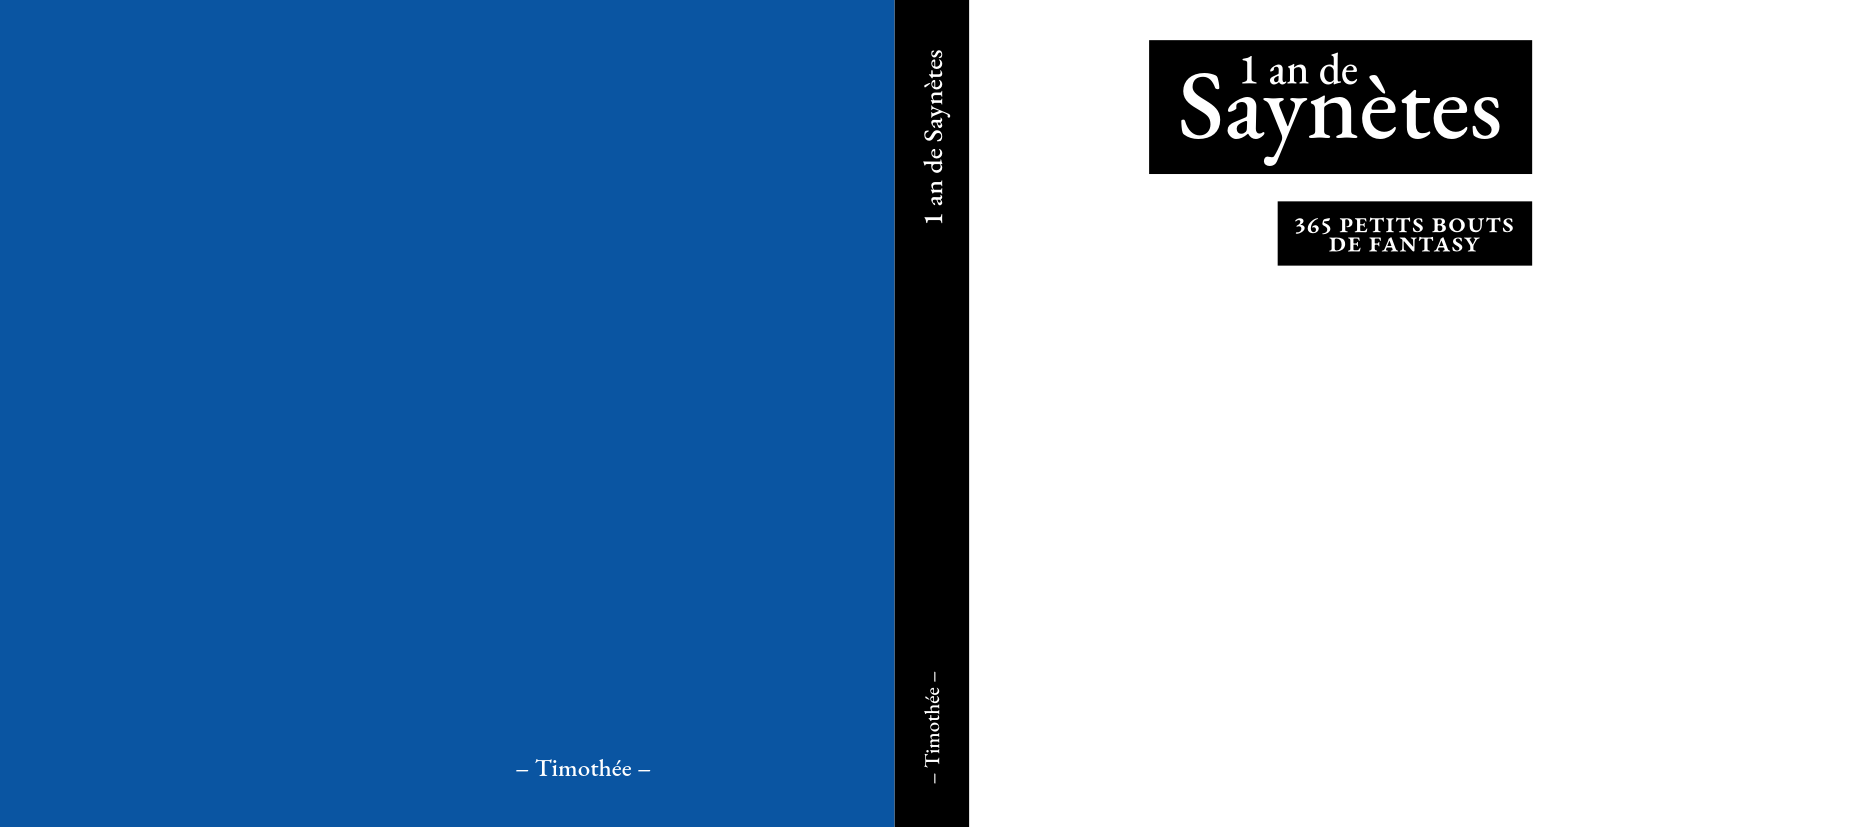 La couverture du livre des Saynètes